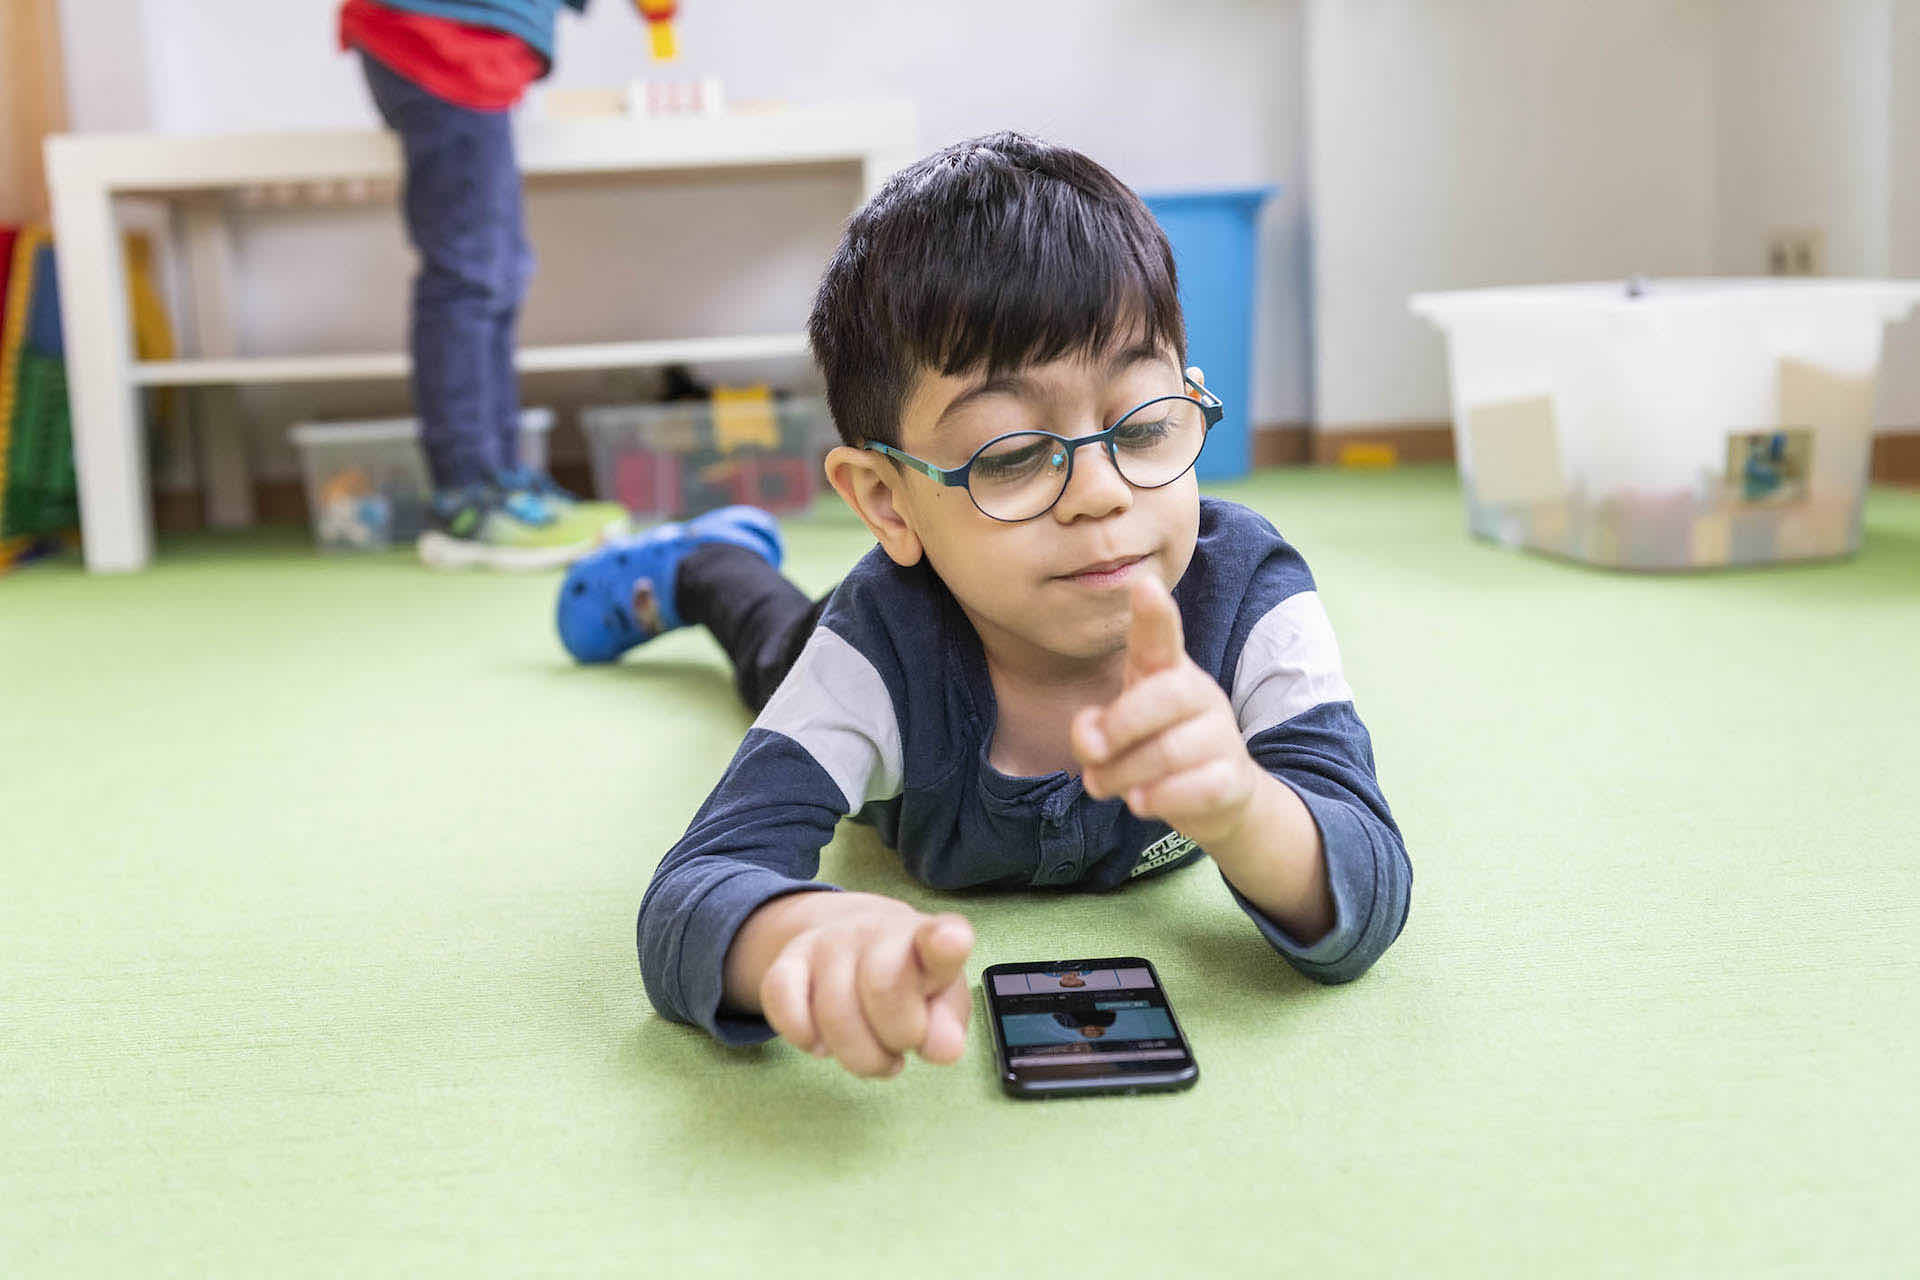 Junge spielt ein SIGNdigital Gebärdenvideo auf dem Smartphone ab.